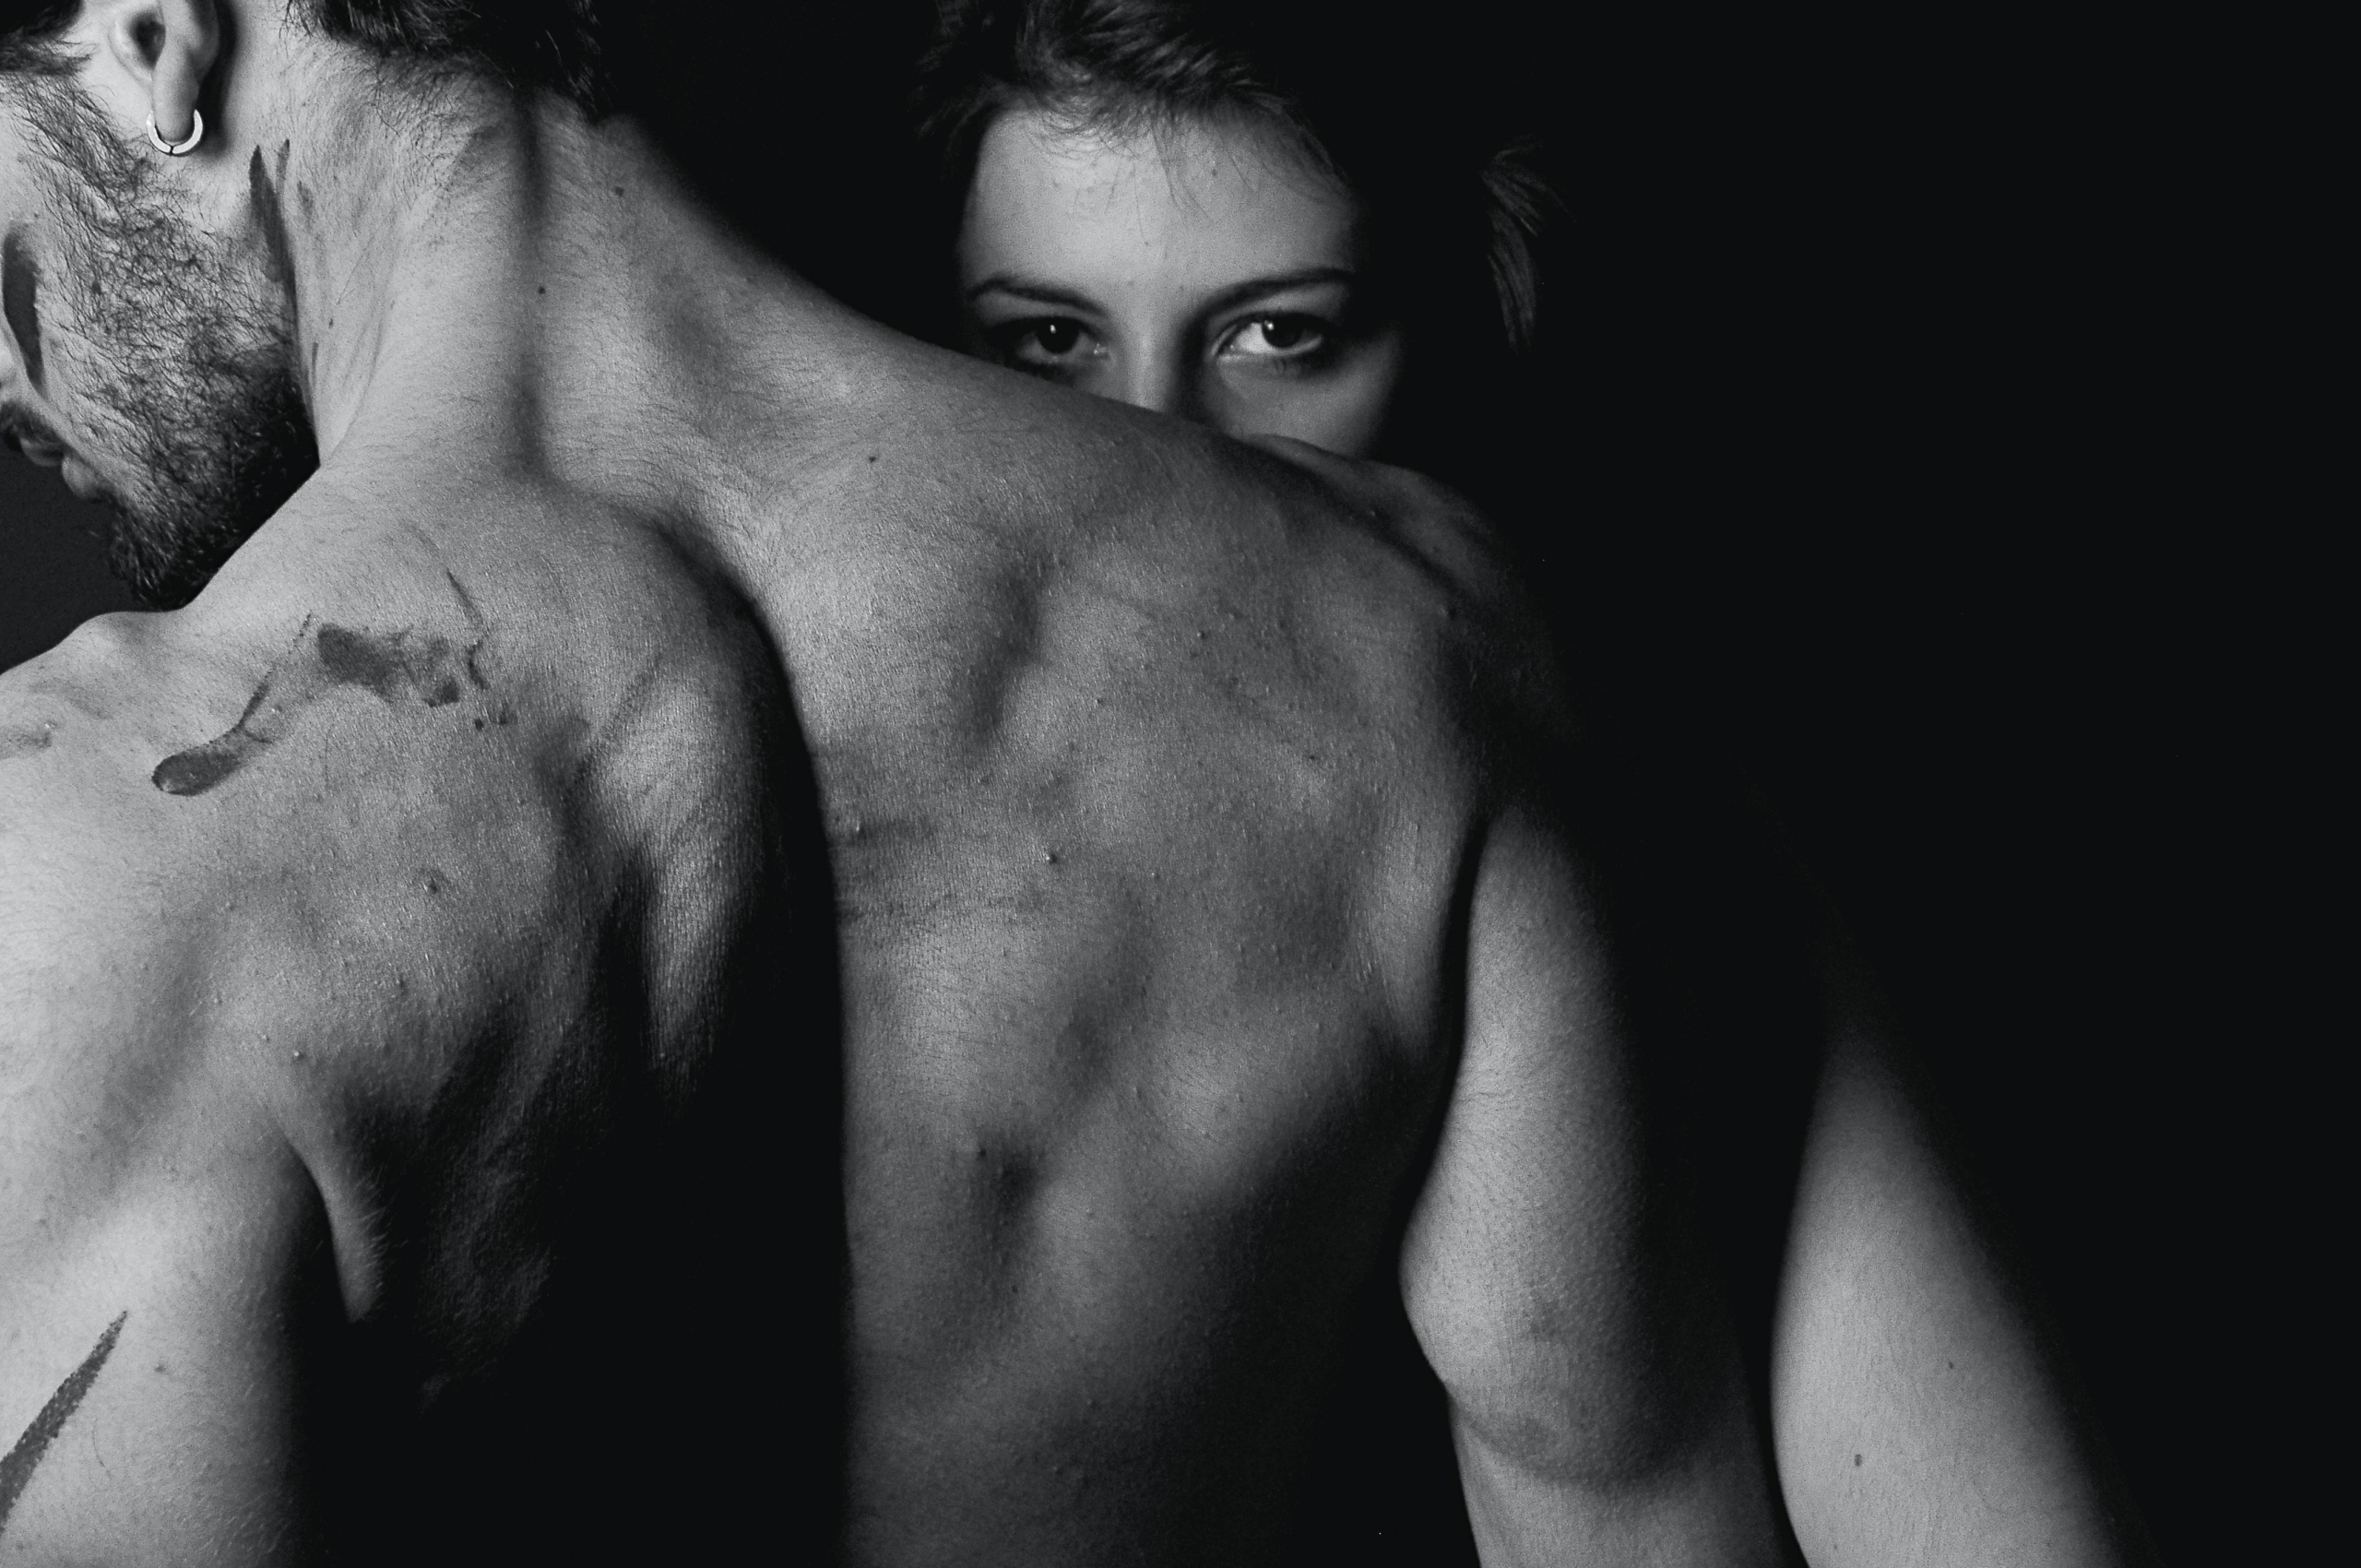 Rücken eines muskulösen Mannes, der nach links schaut. Die Frau blickt über seine Schulter - Bild zum Thema Typisch männliche Eingriffe